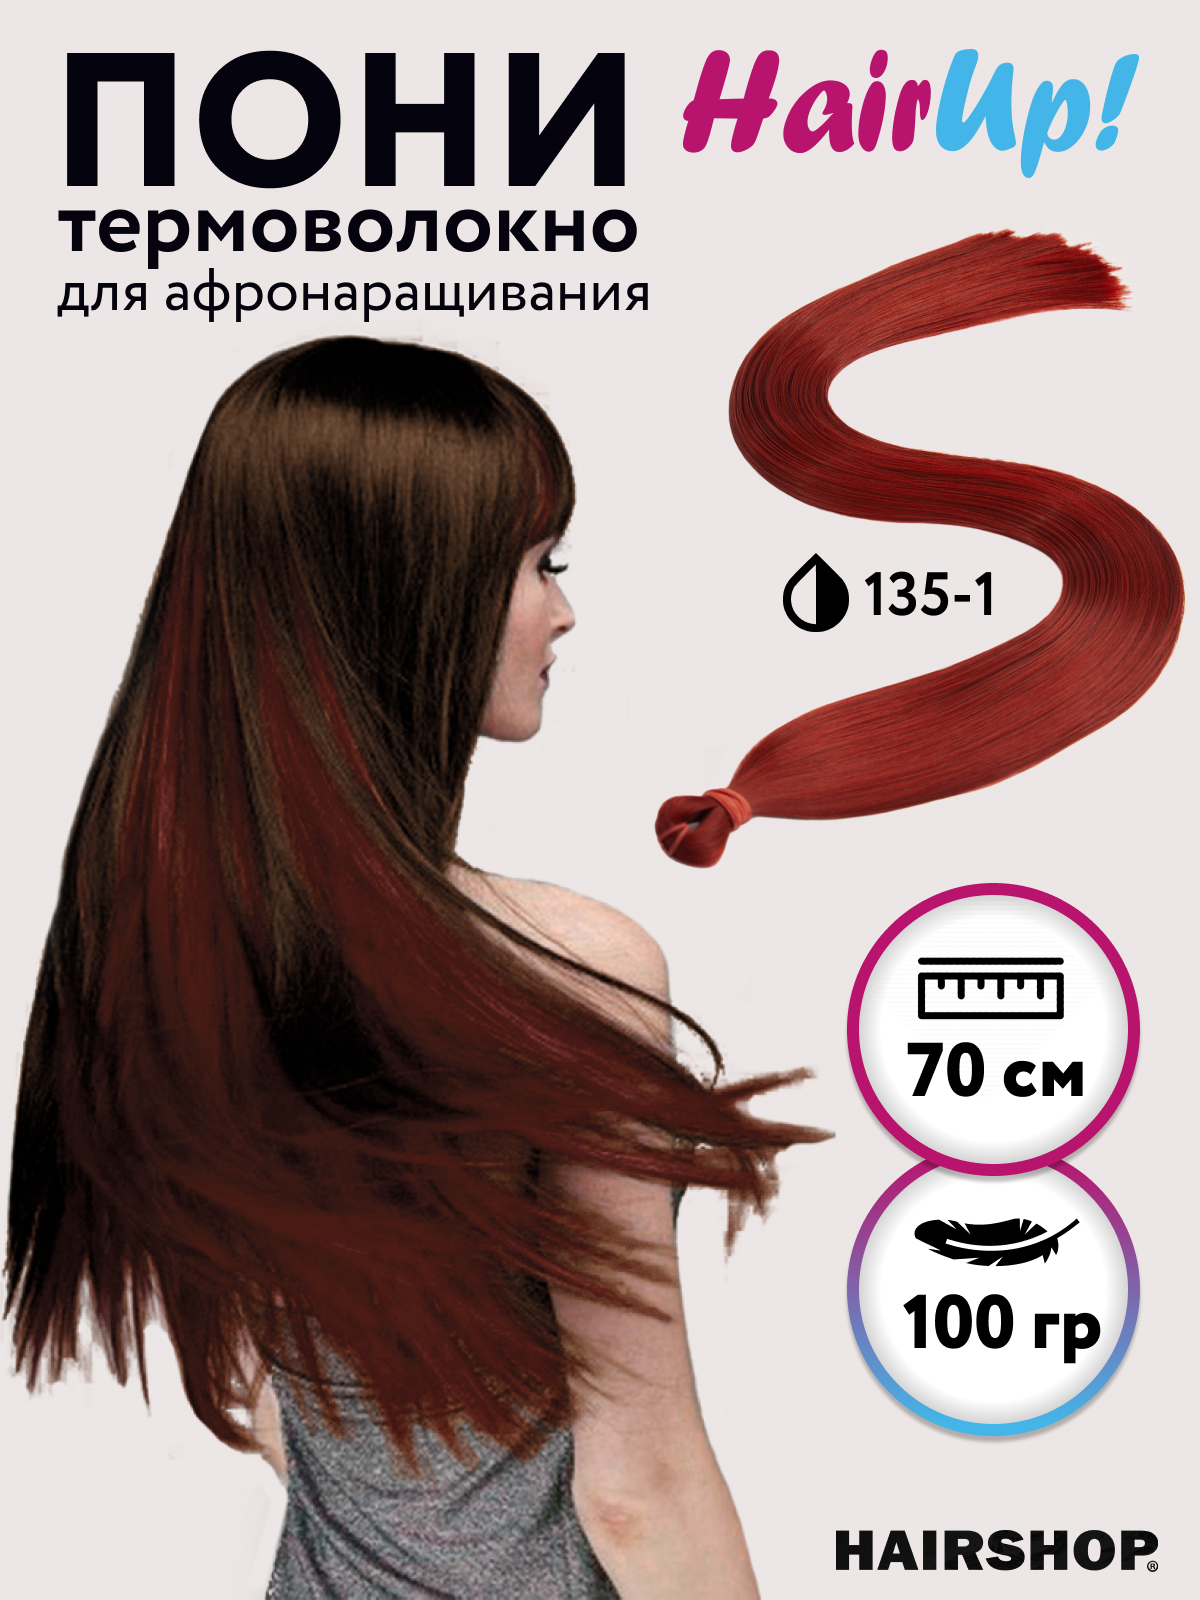 Канекалон Hairshop Пони HairUp для точечного афронаращивания прямые 135-1 1,4м 100г tsubaki спрей гладкие и прямые волосы